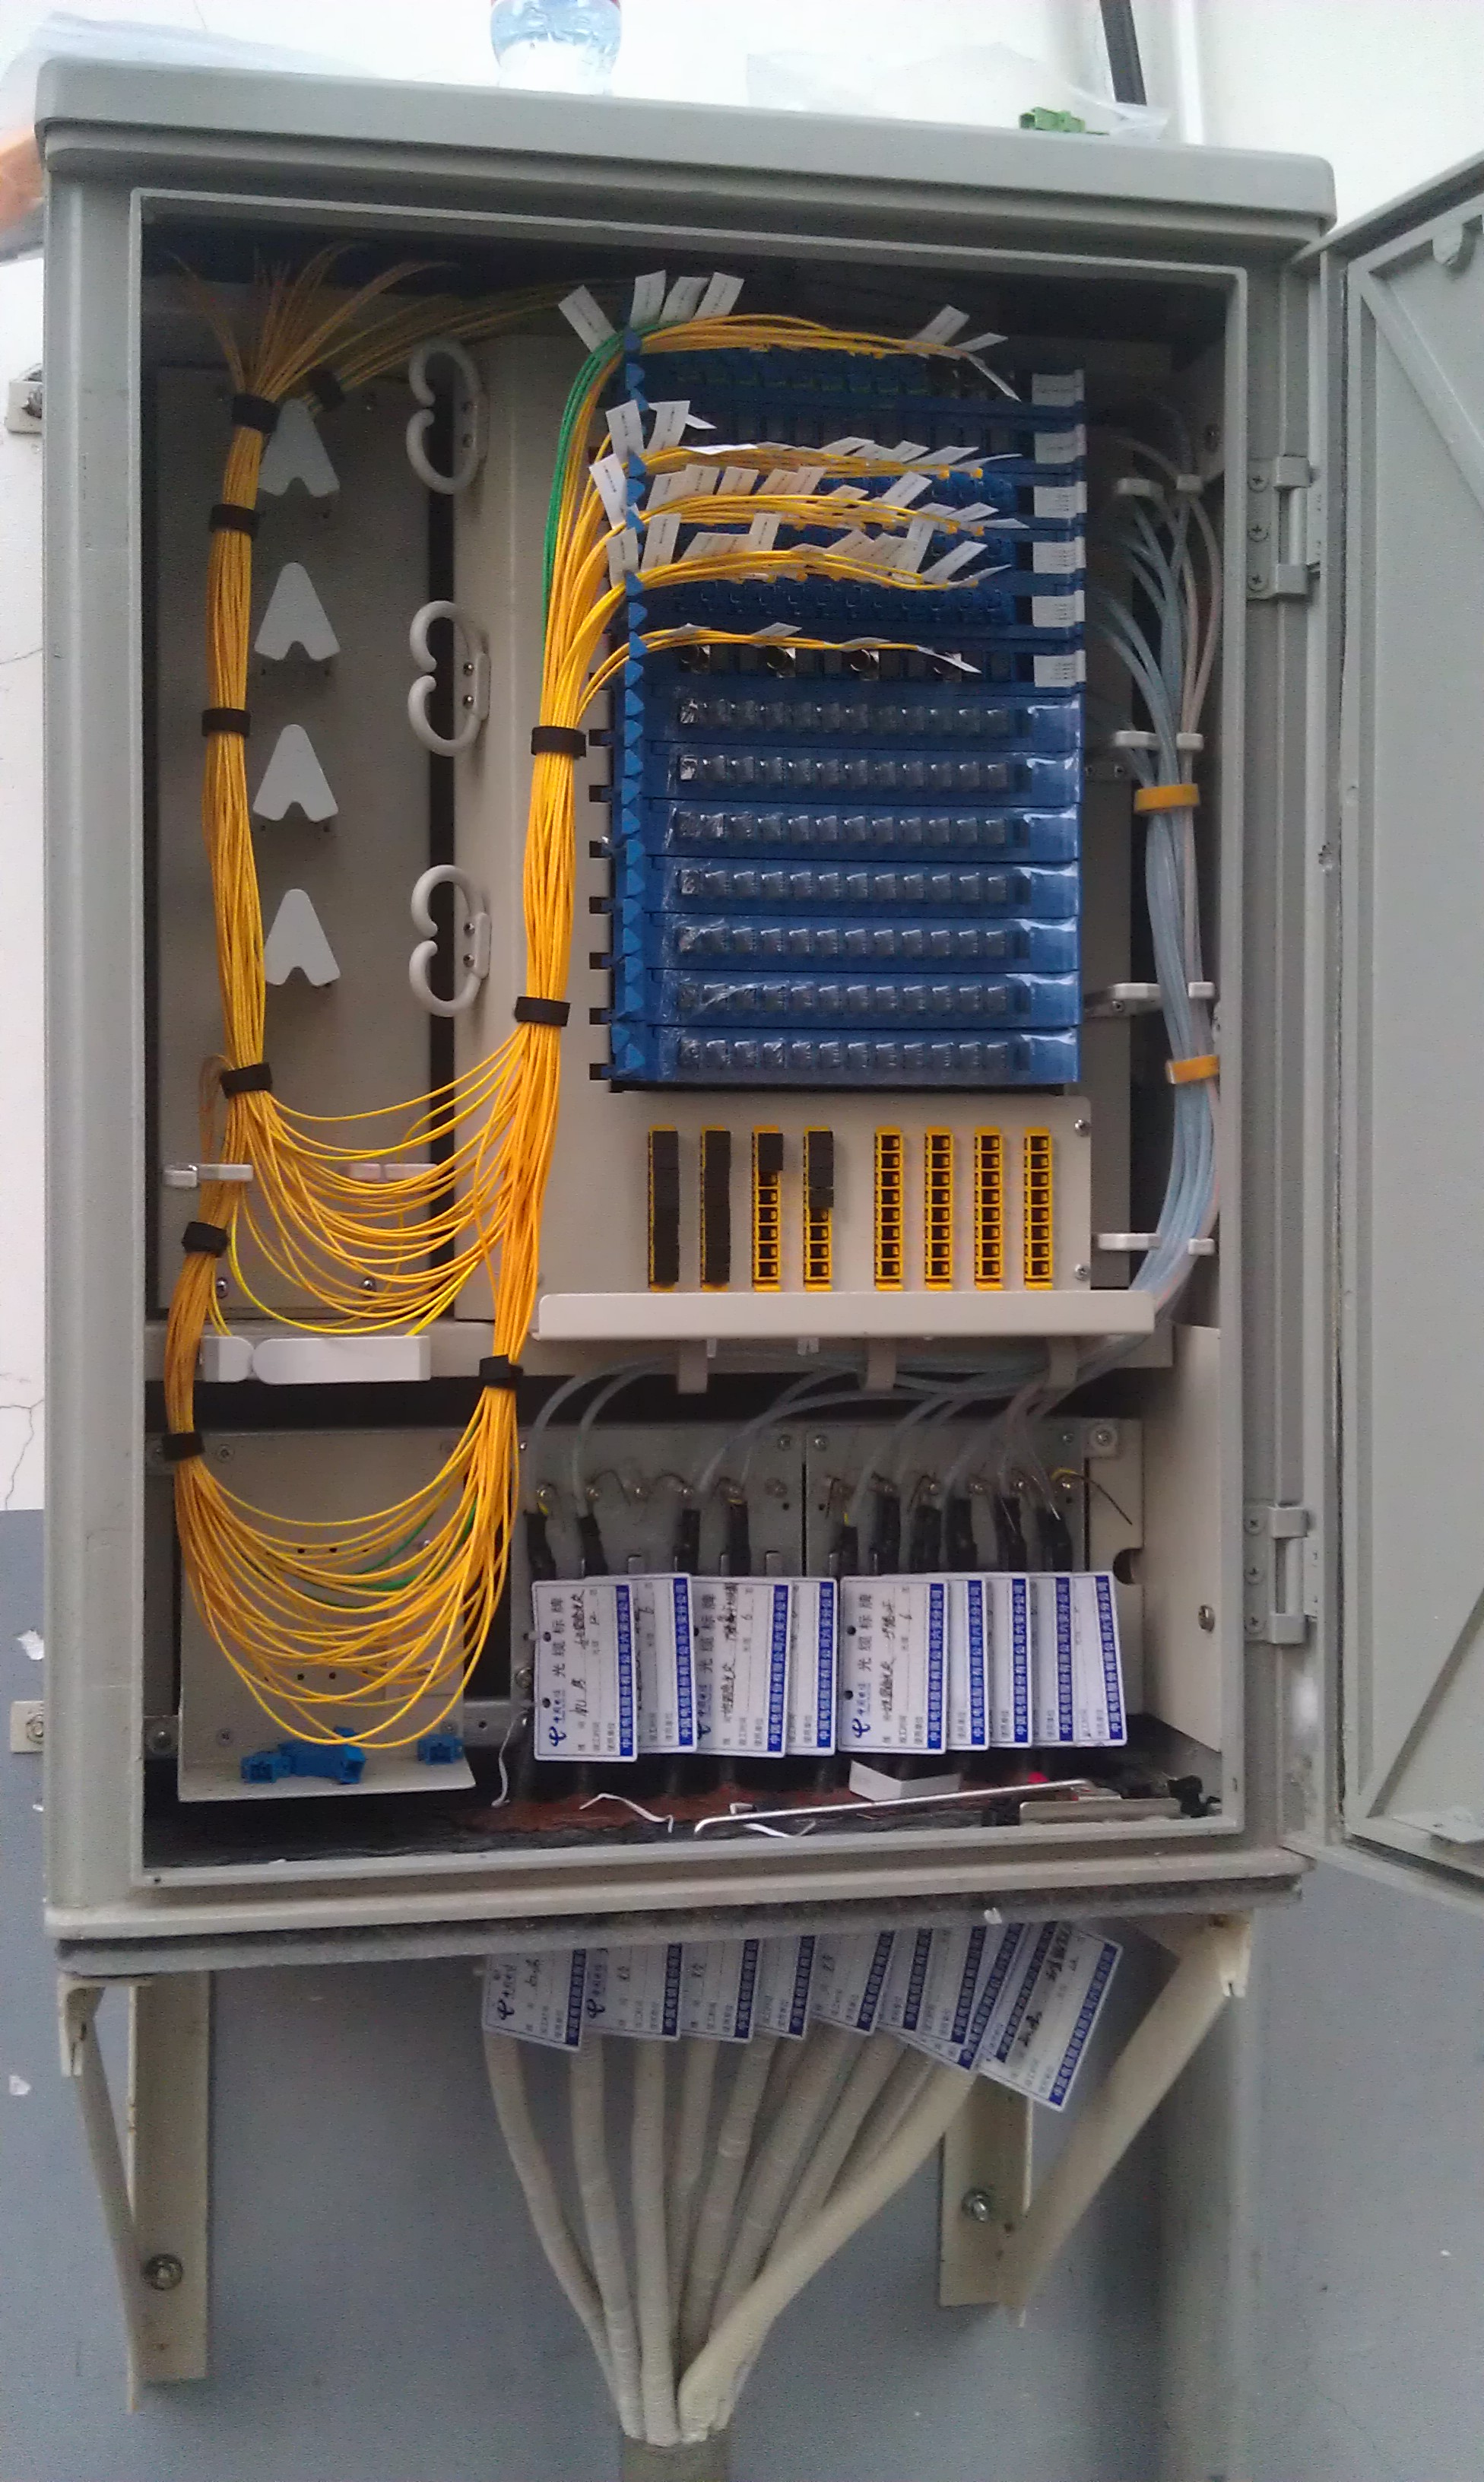 光缆、终端盒、尾纤的作用和接法_光纤